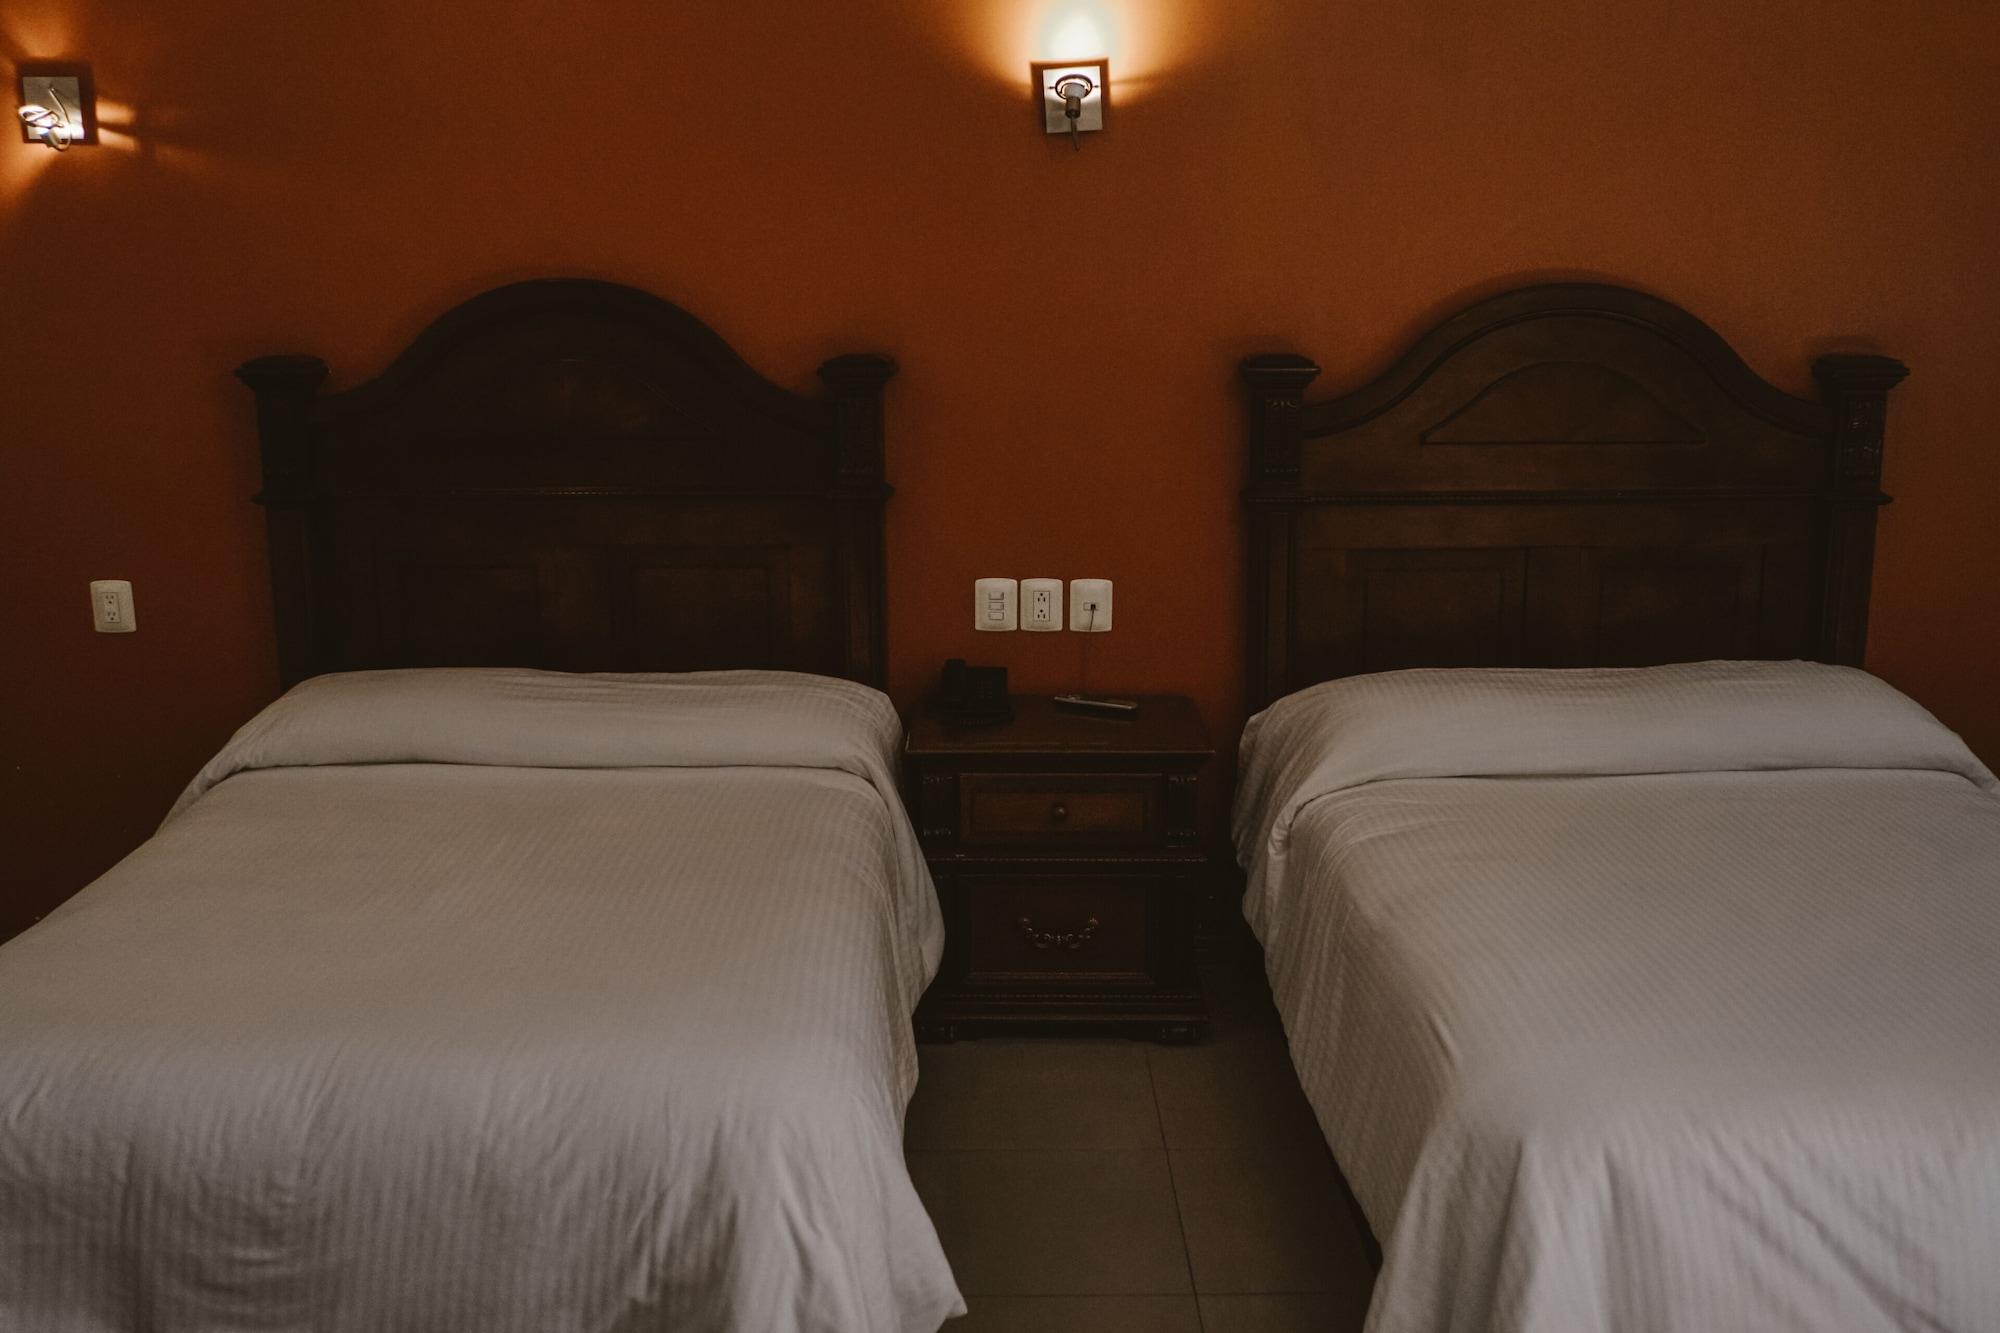 Hotel Puebla De Antano Buitenkant foto